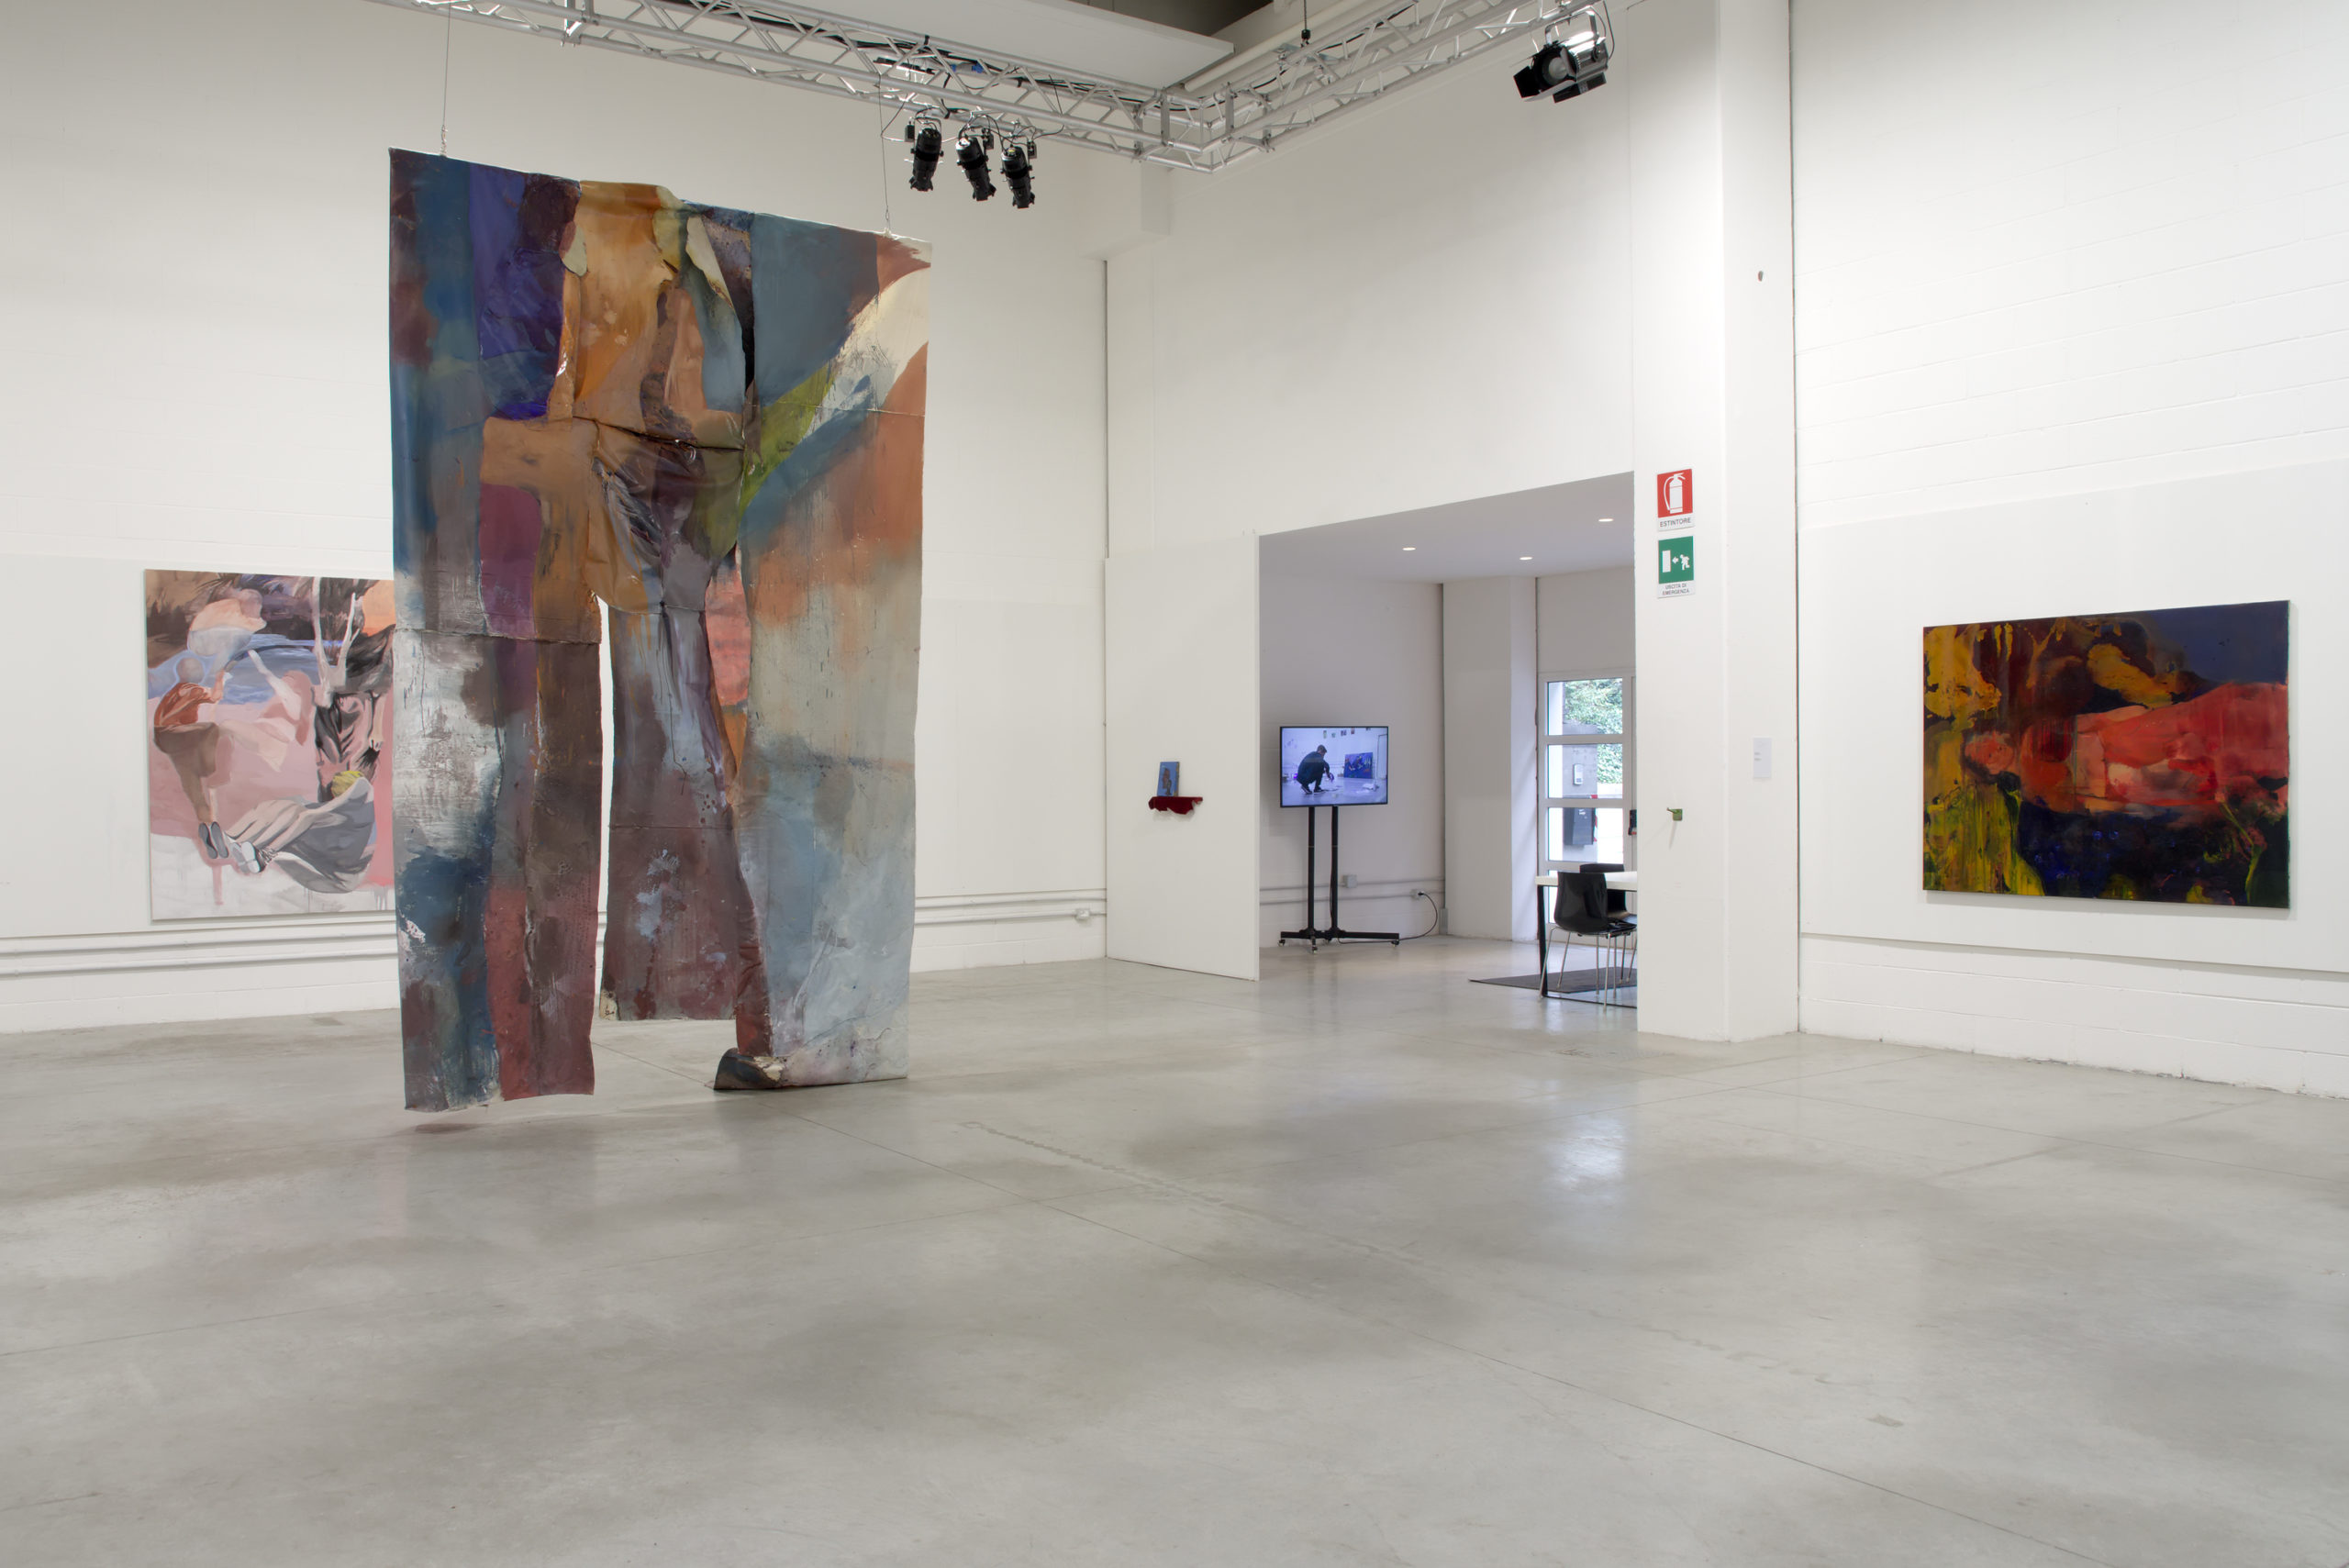 Fuori dal vaso, 2019, installation view, Vulcano, ph. C. Bettio